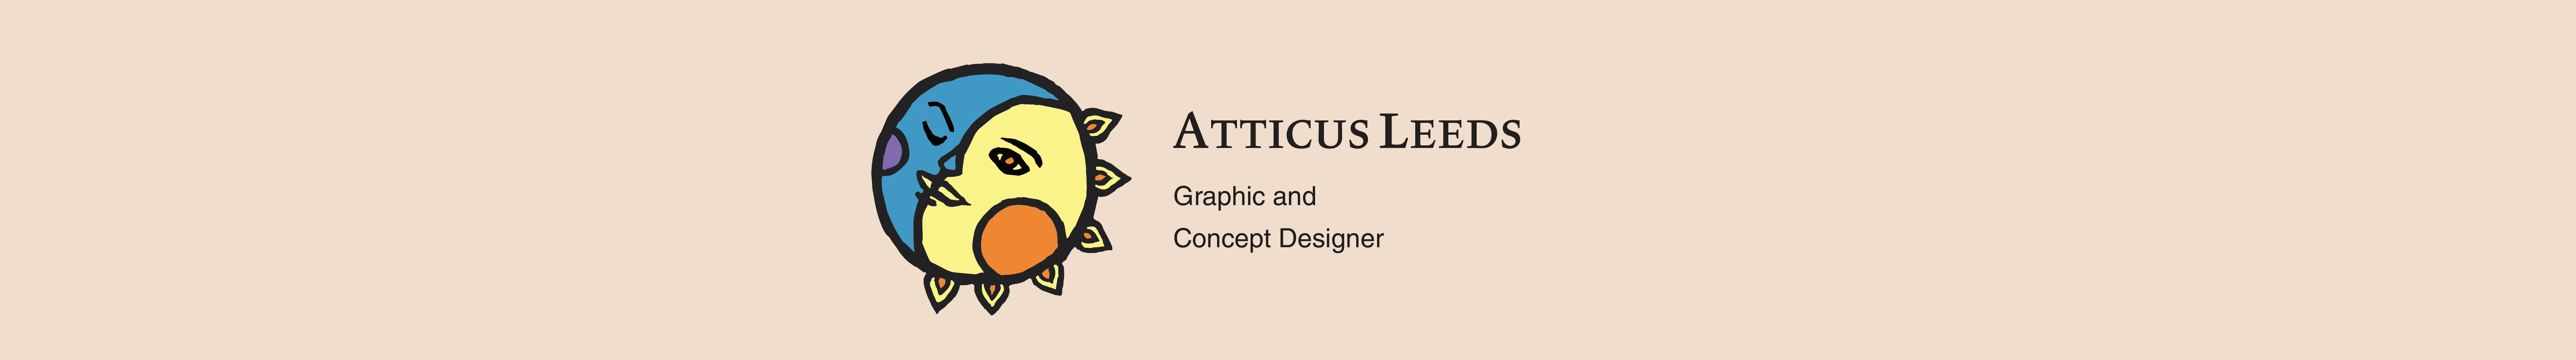 Atticus Leeds's profile banner